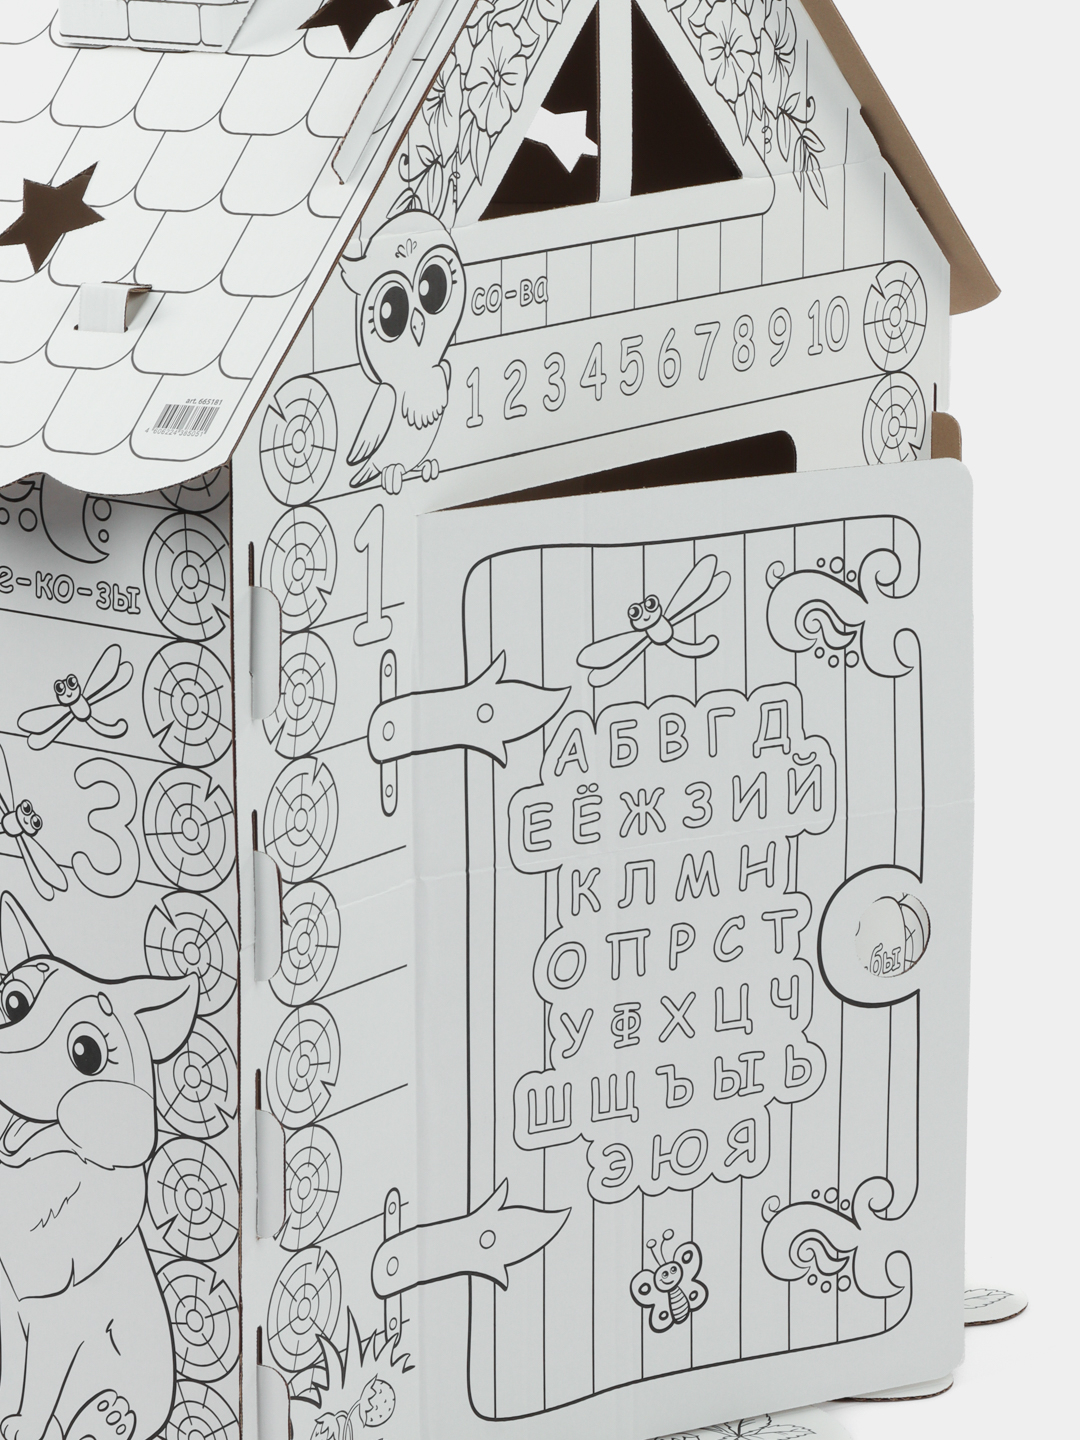 Сказочный домик раскраска для детей